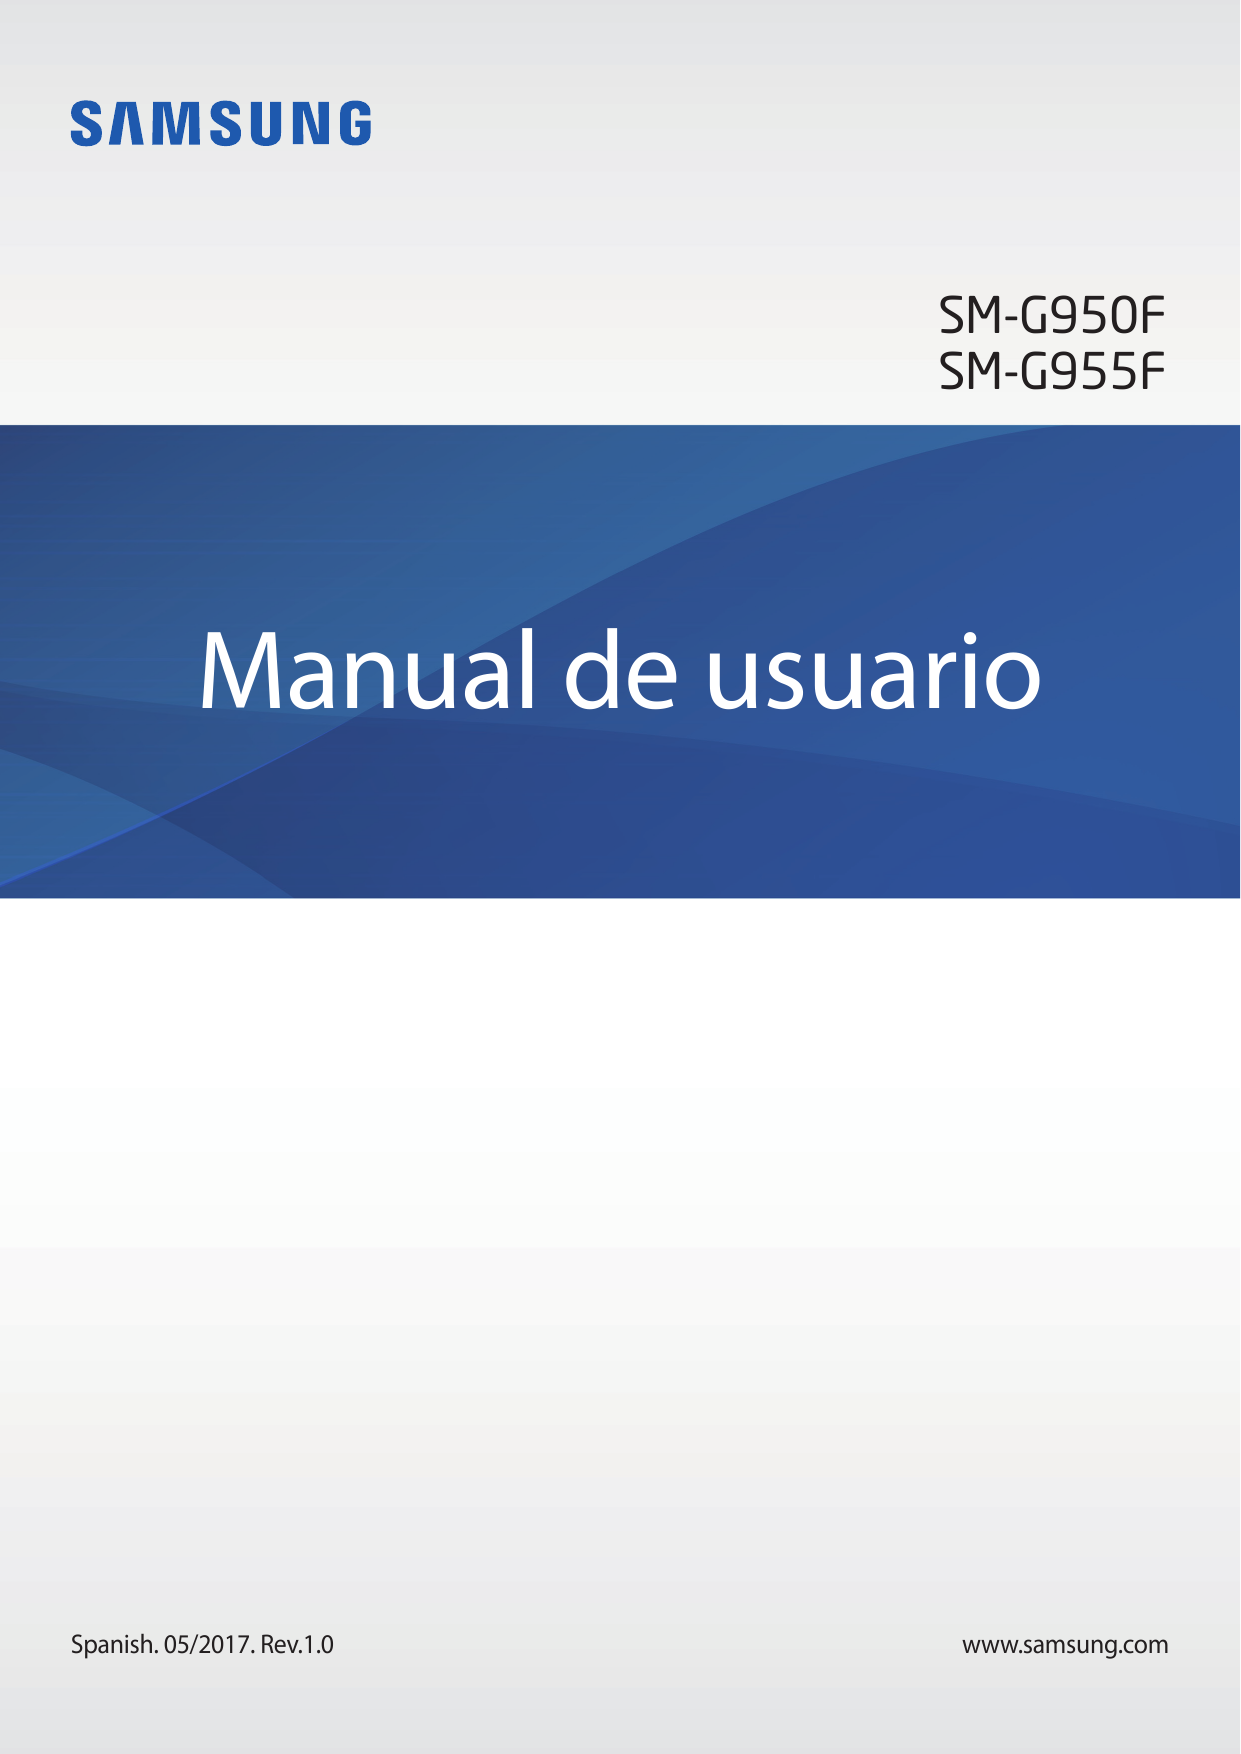 SM-G950FSM-G955FManual de usuarioSpanish. 05/2017. Rev.1.0www.samsung.com